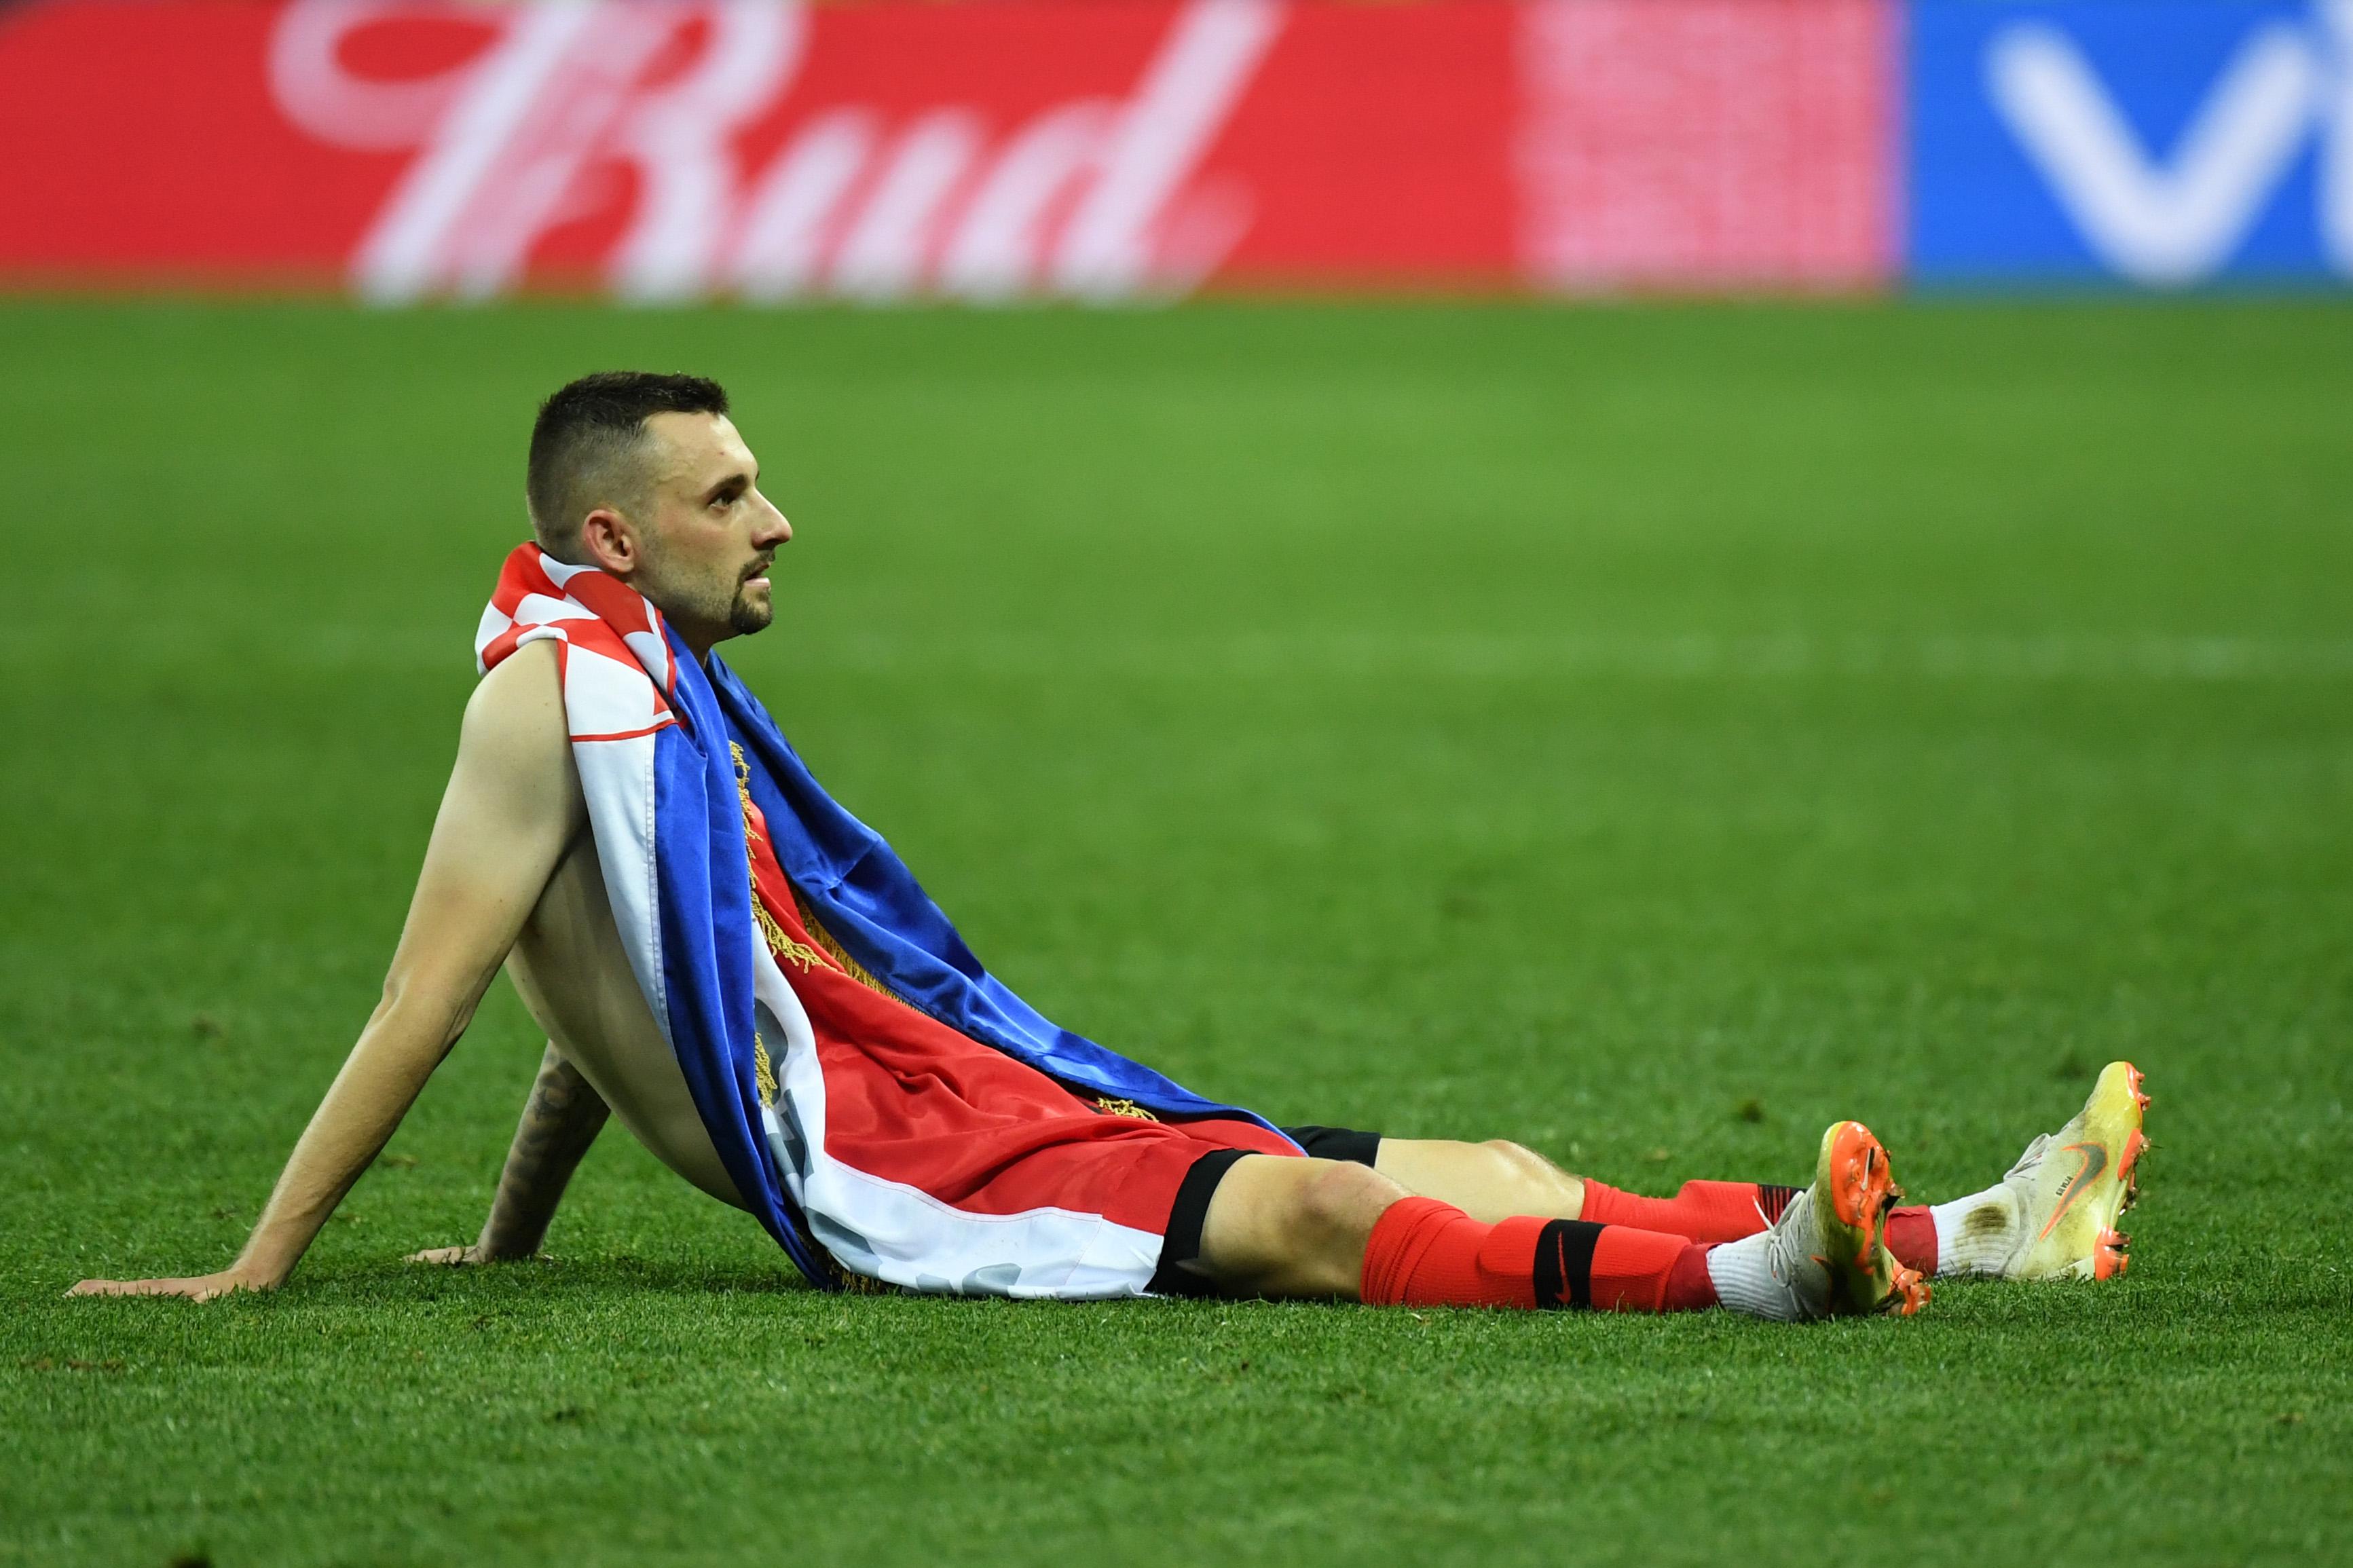 Hrvatski junak o kojem niko ne govori sinoć je srušio rekord SP-a